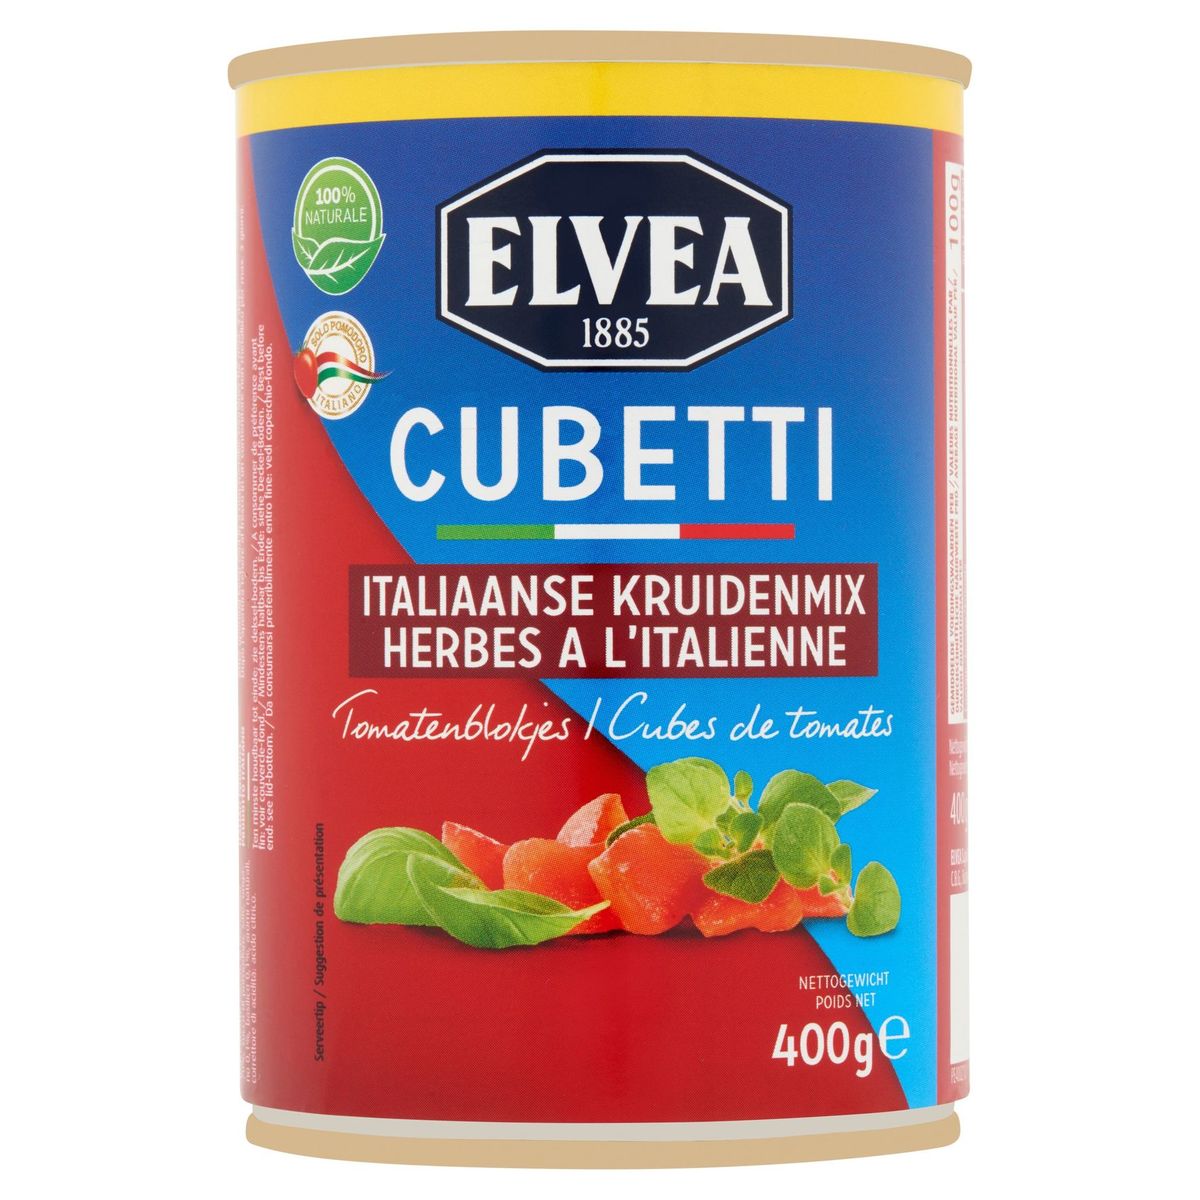 Elvea Cubetti Italiaanse Kruidenmix Tomatenblokjes 400 g